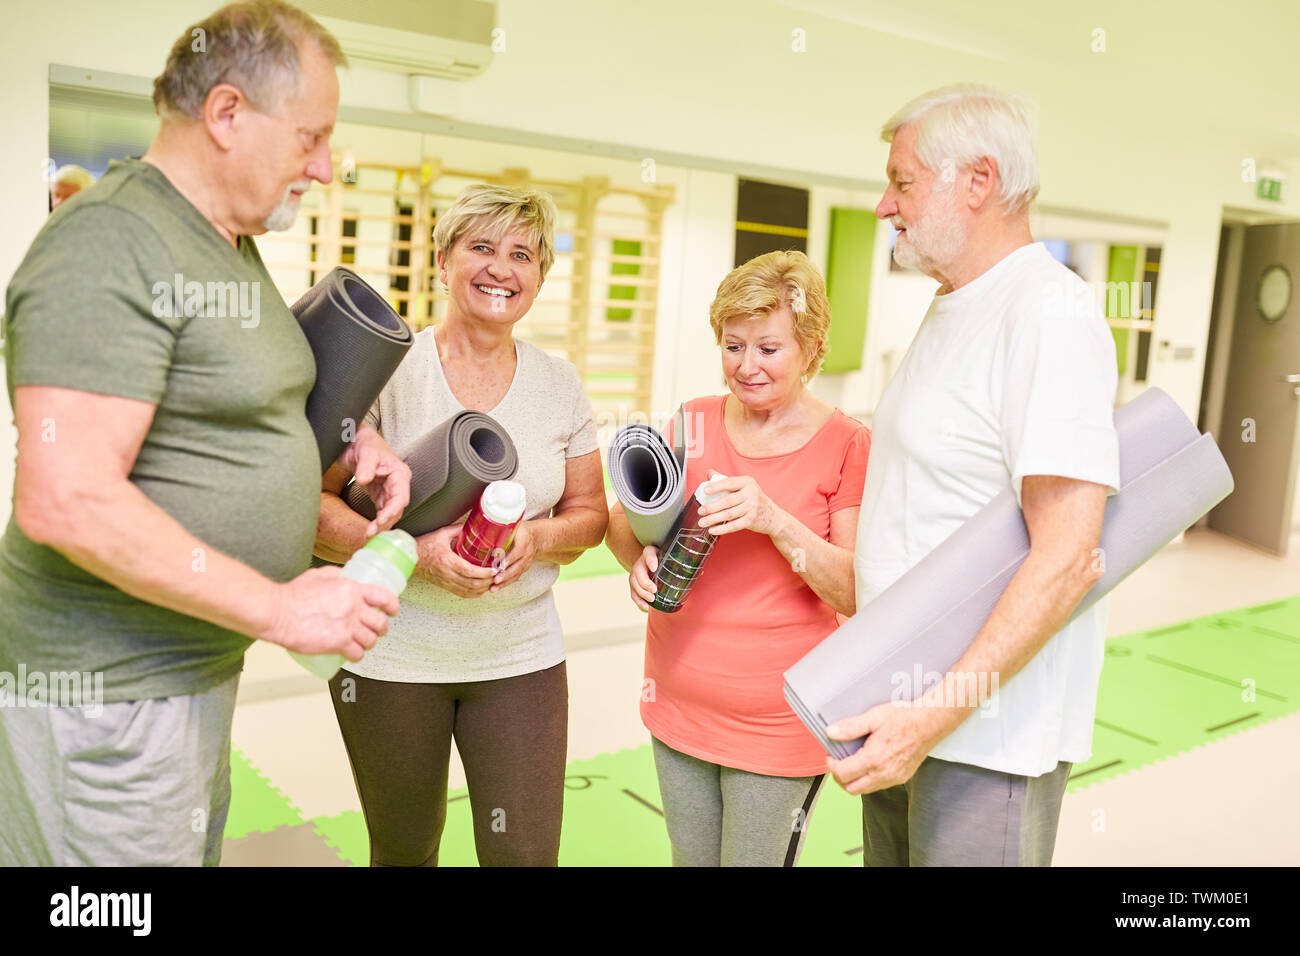 Gruppe von Seniorinnen und Senioren mit Yoga Matte im Fitnesscenter während einer Pause während der small talk Stockfoto